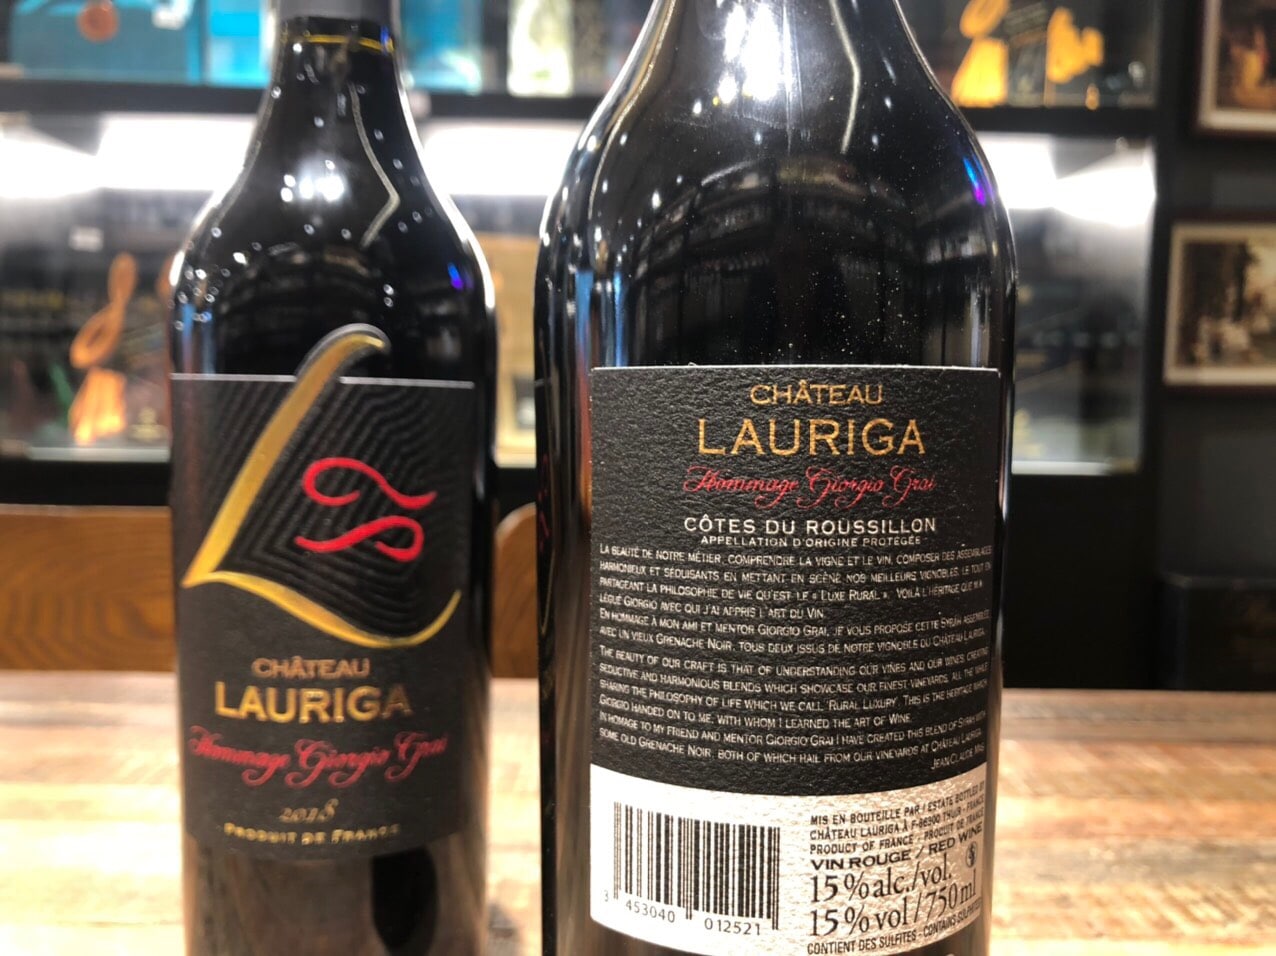 Rượu Vang Château Lauriga Hommage Giorgio Grai 2018 được kết hợp từ 3 giống nho nổi tiếng vùng Côte du Roussillon